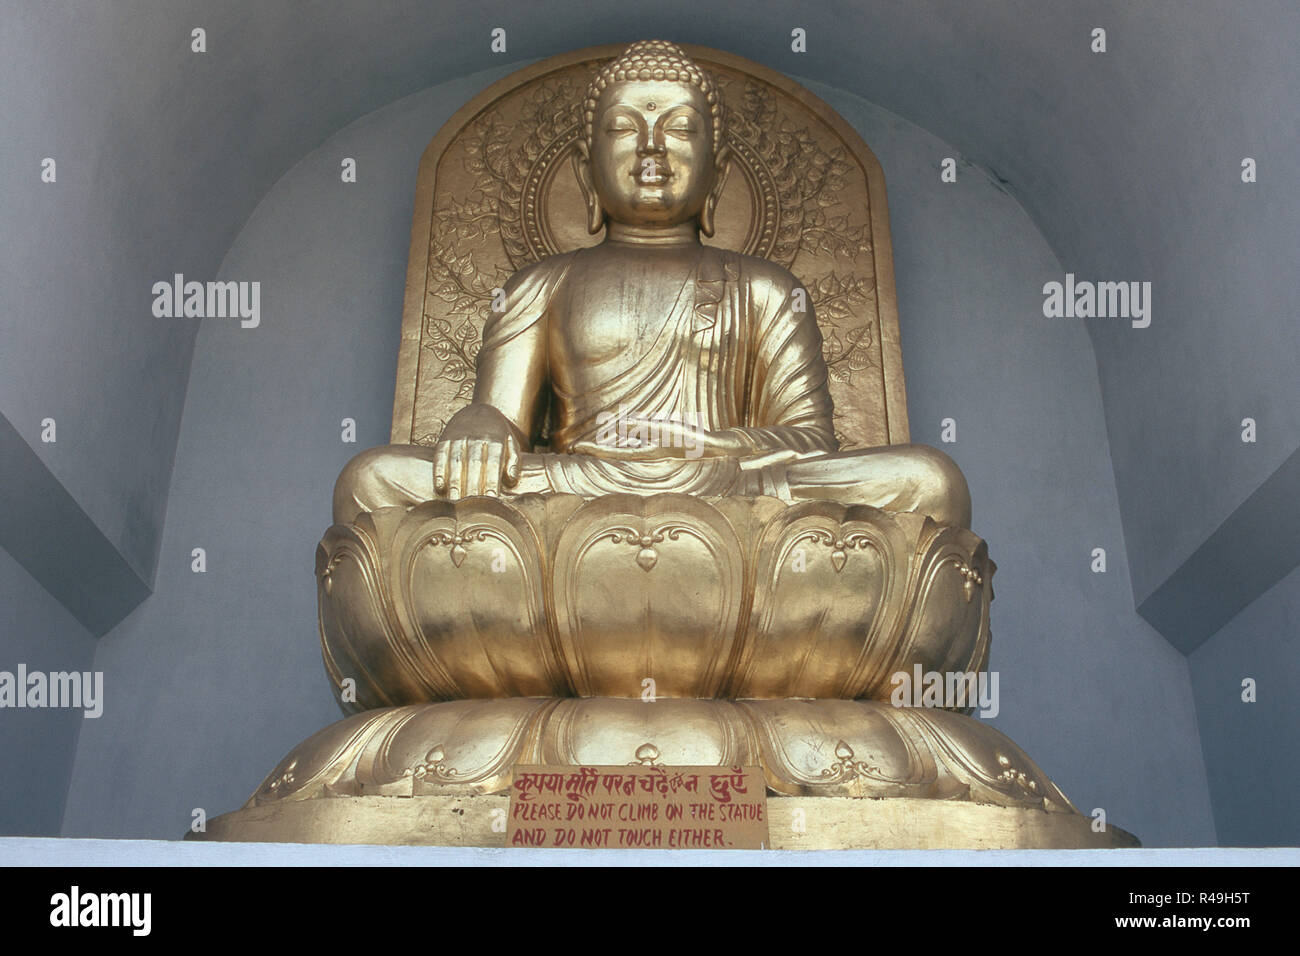 Erleuchtung goldene Statue des Sitzenden Buddha, Vaishali, Bihar, Indien, Asien Stockfoto